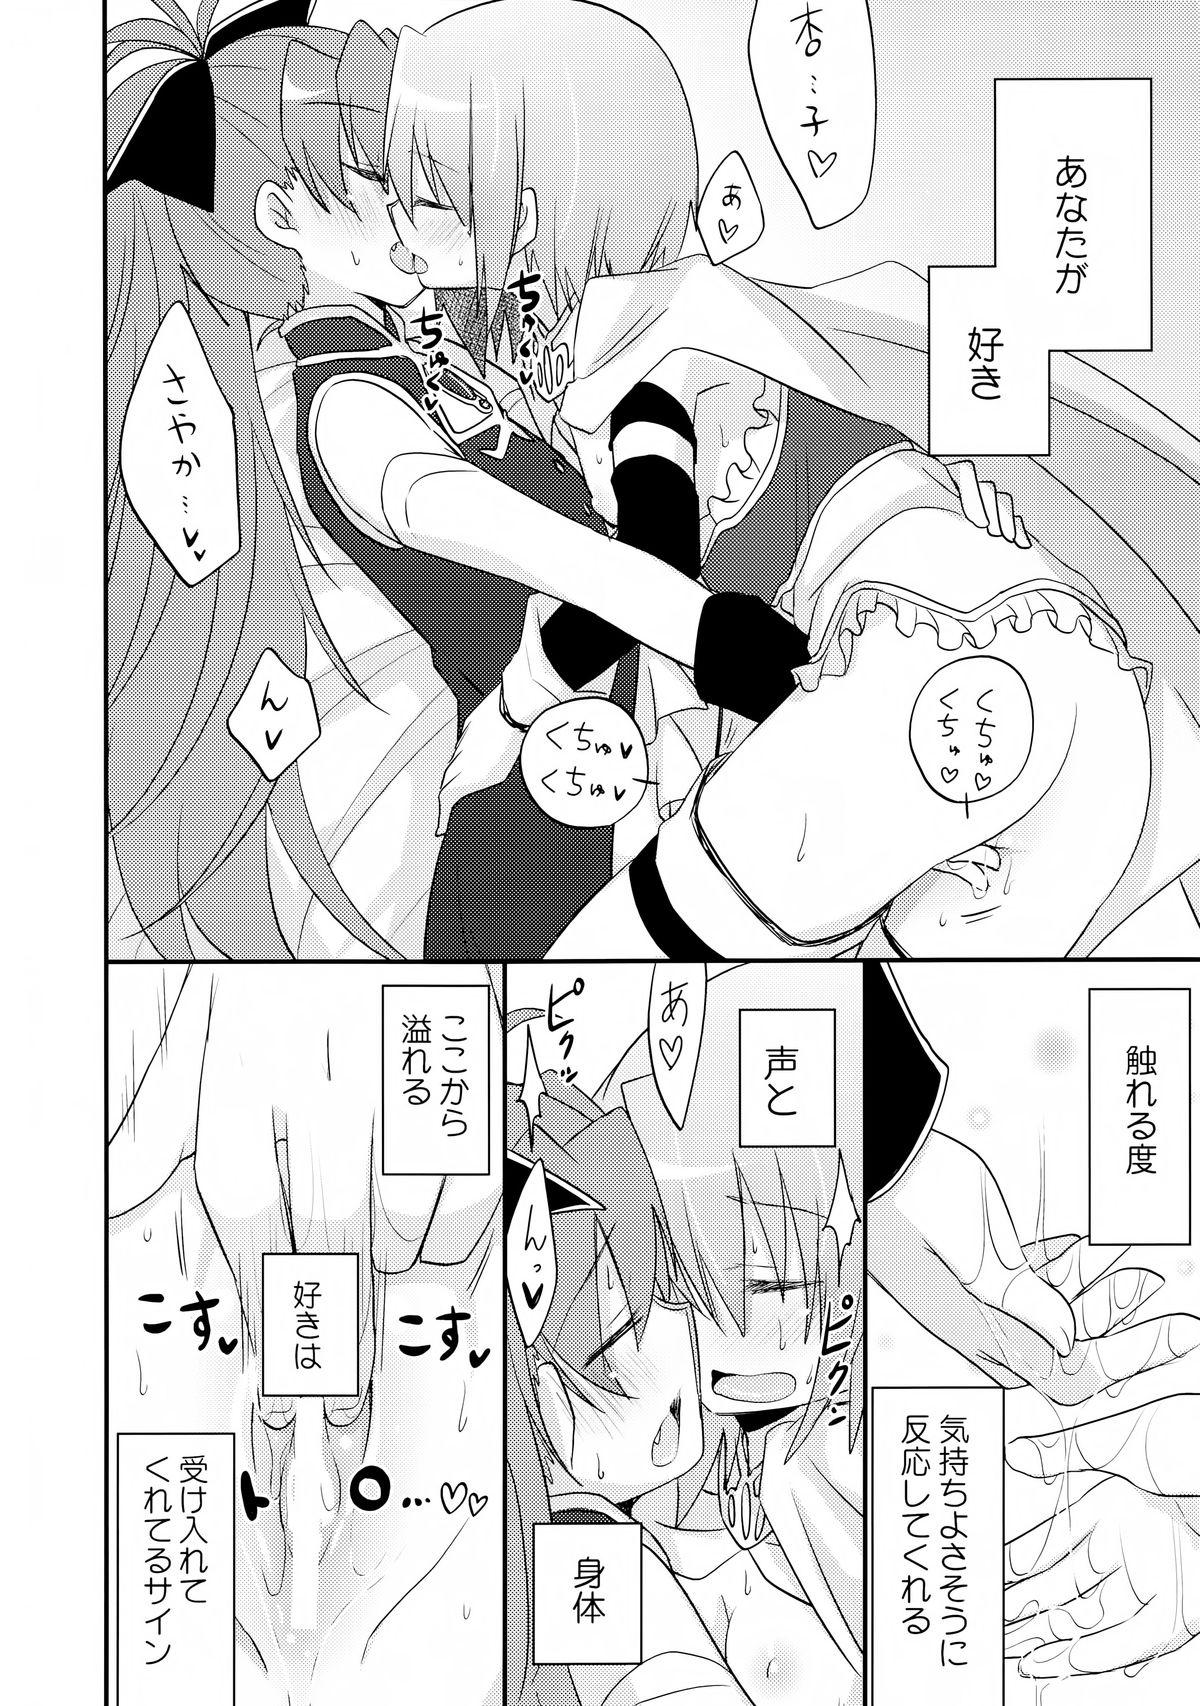 Slutty Atashitachi no Jigo Senkyou - Puella magi madoka magica Rubdown - Page 8